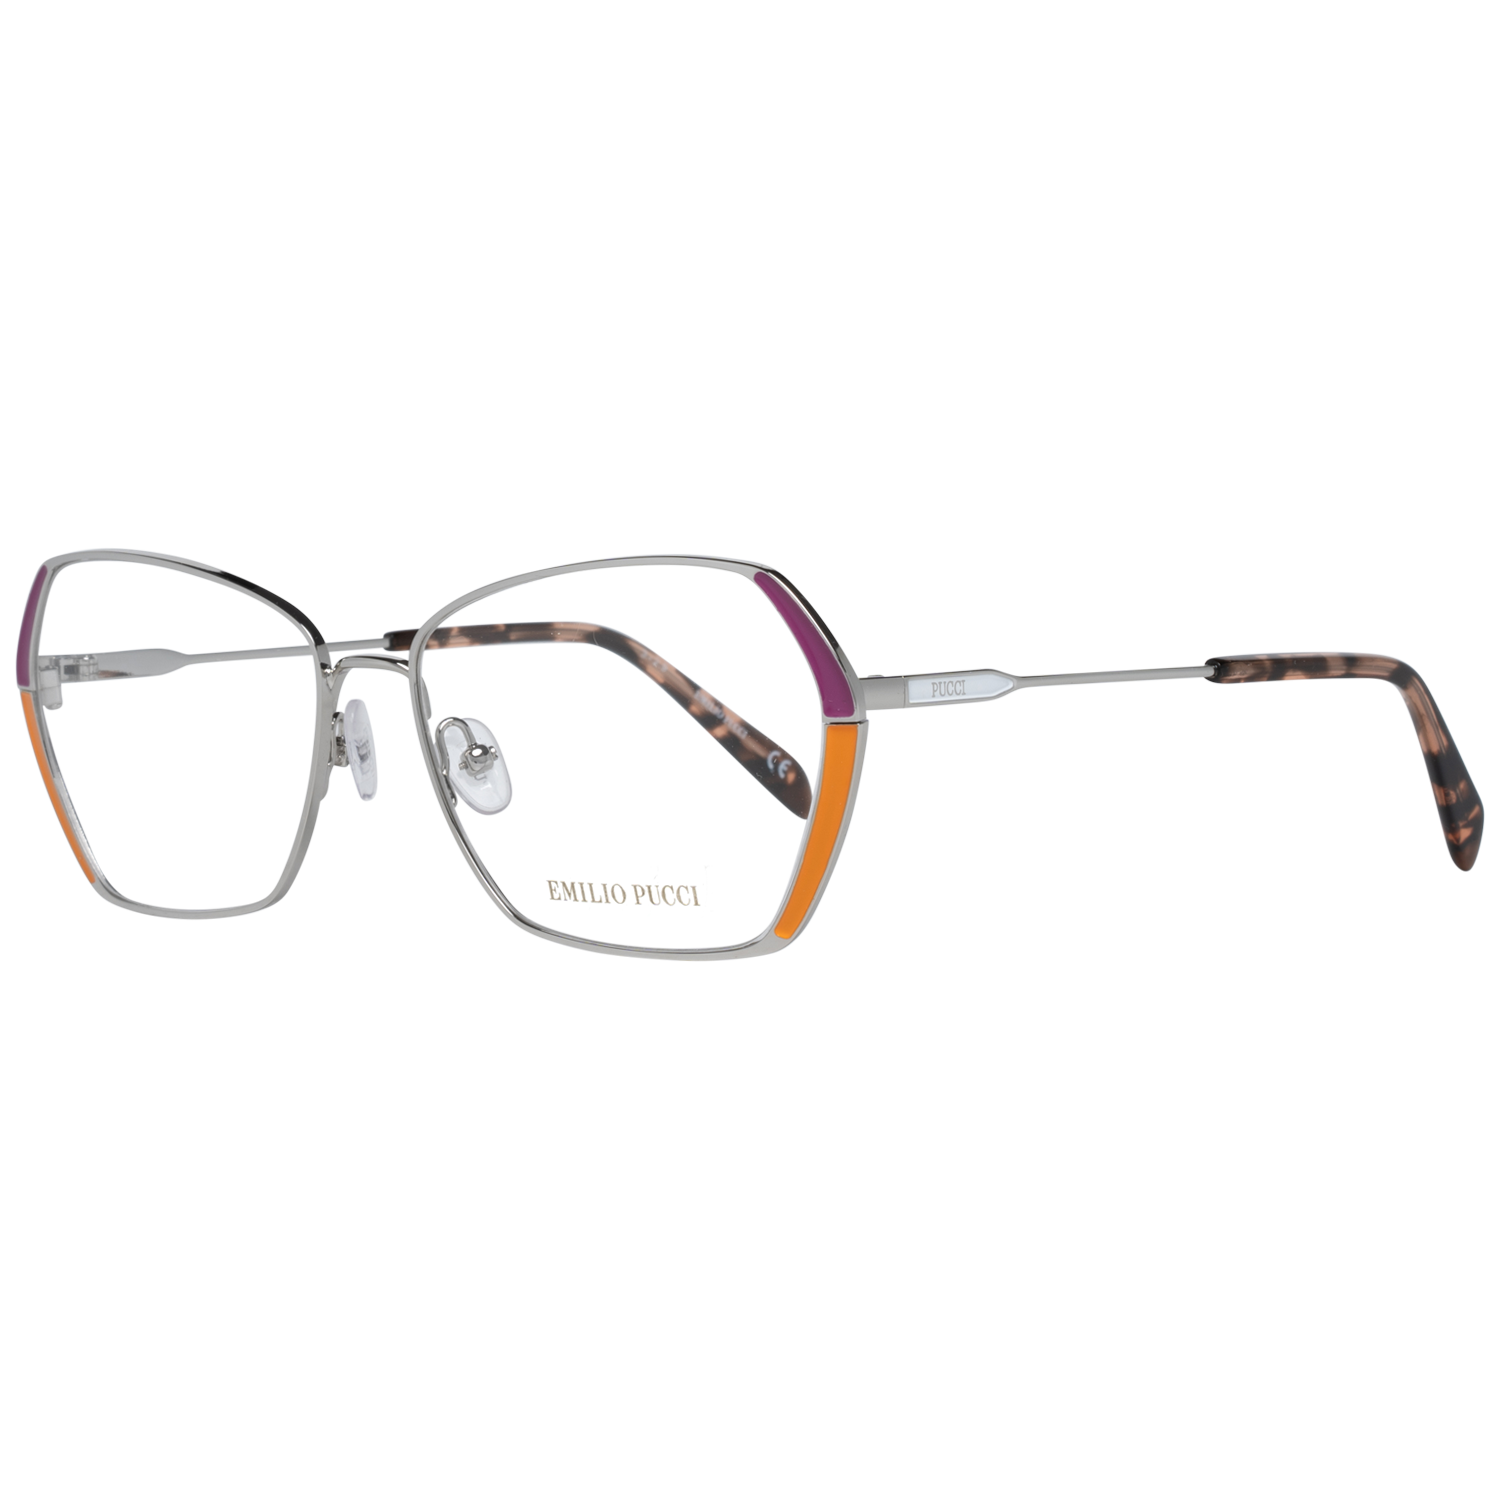 Emilio Pucci Frames Emilio Pucci Optical Frame EP5138 020 57 Eyeglasses Eyewear UK USA Australia 